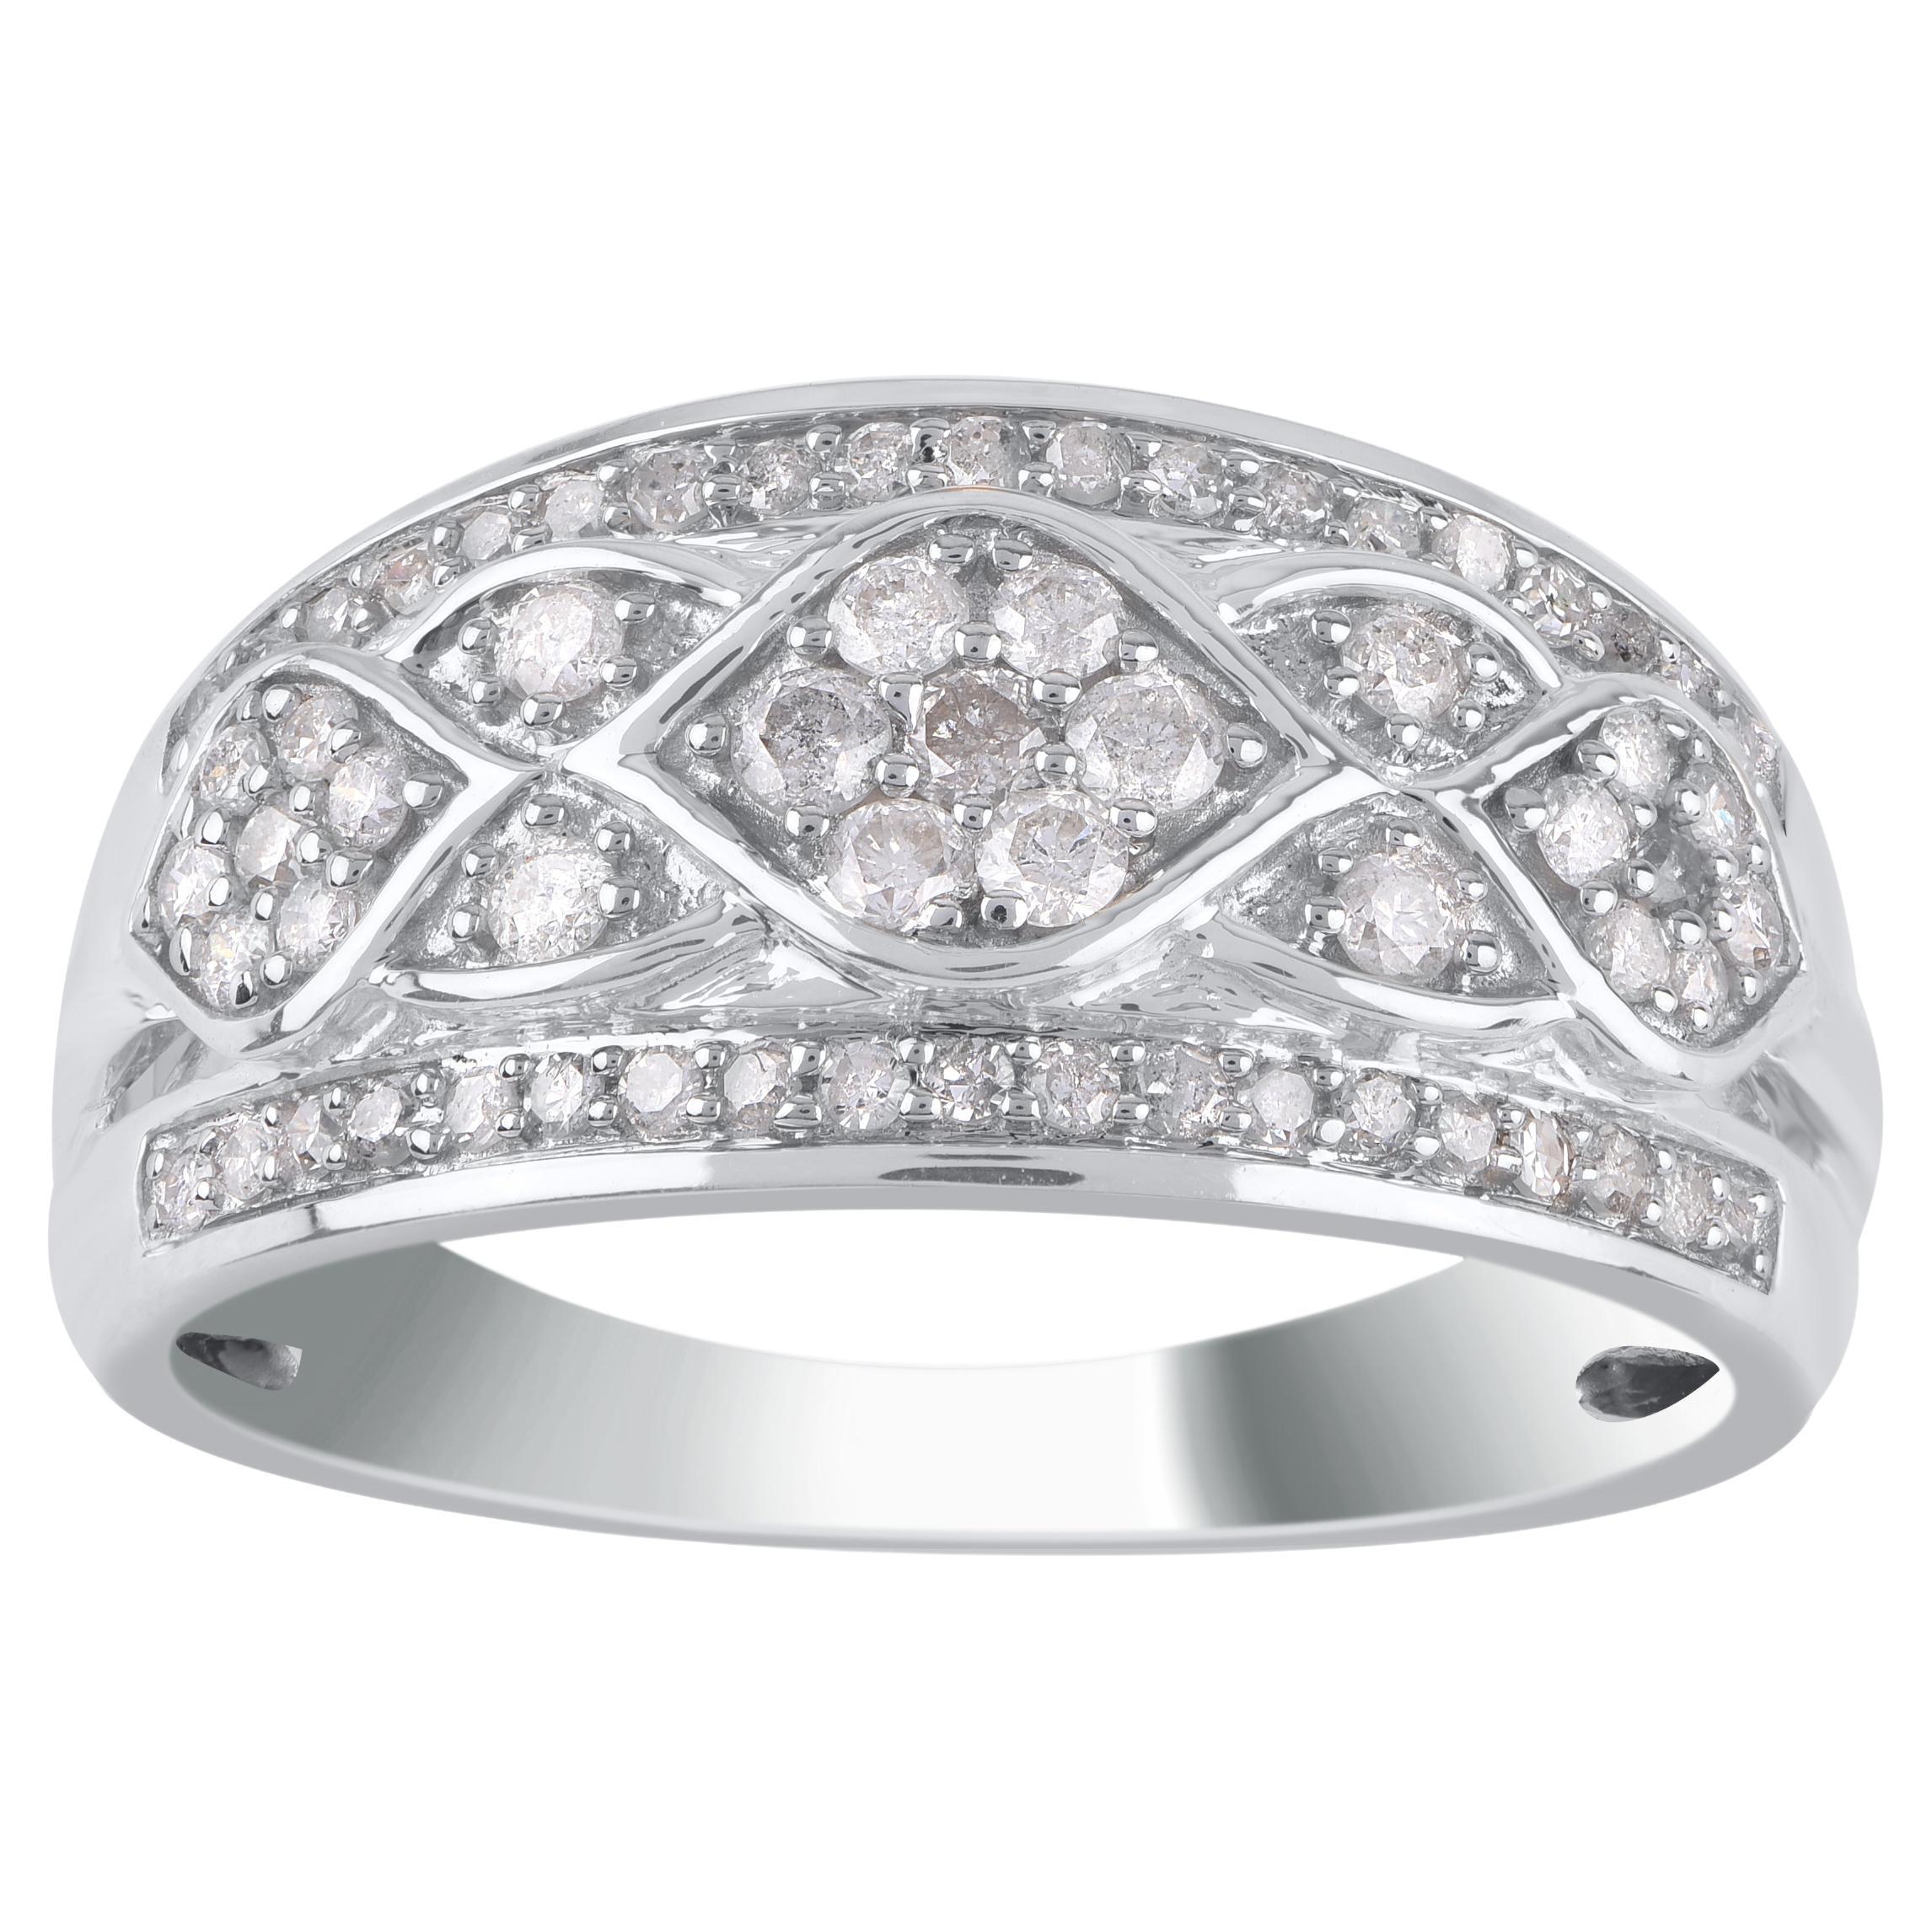 TJD 0.50 Carat Natural Round Diamond 14KT White Gold Wedding Band Ring